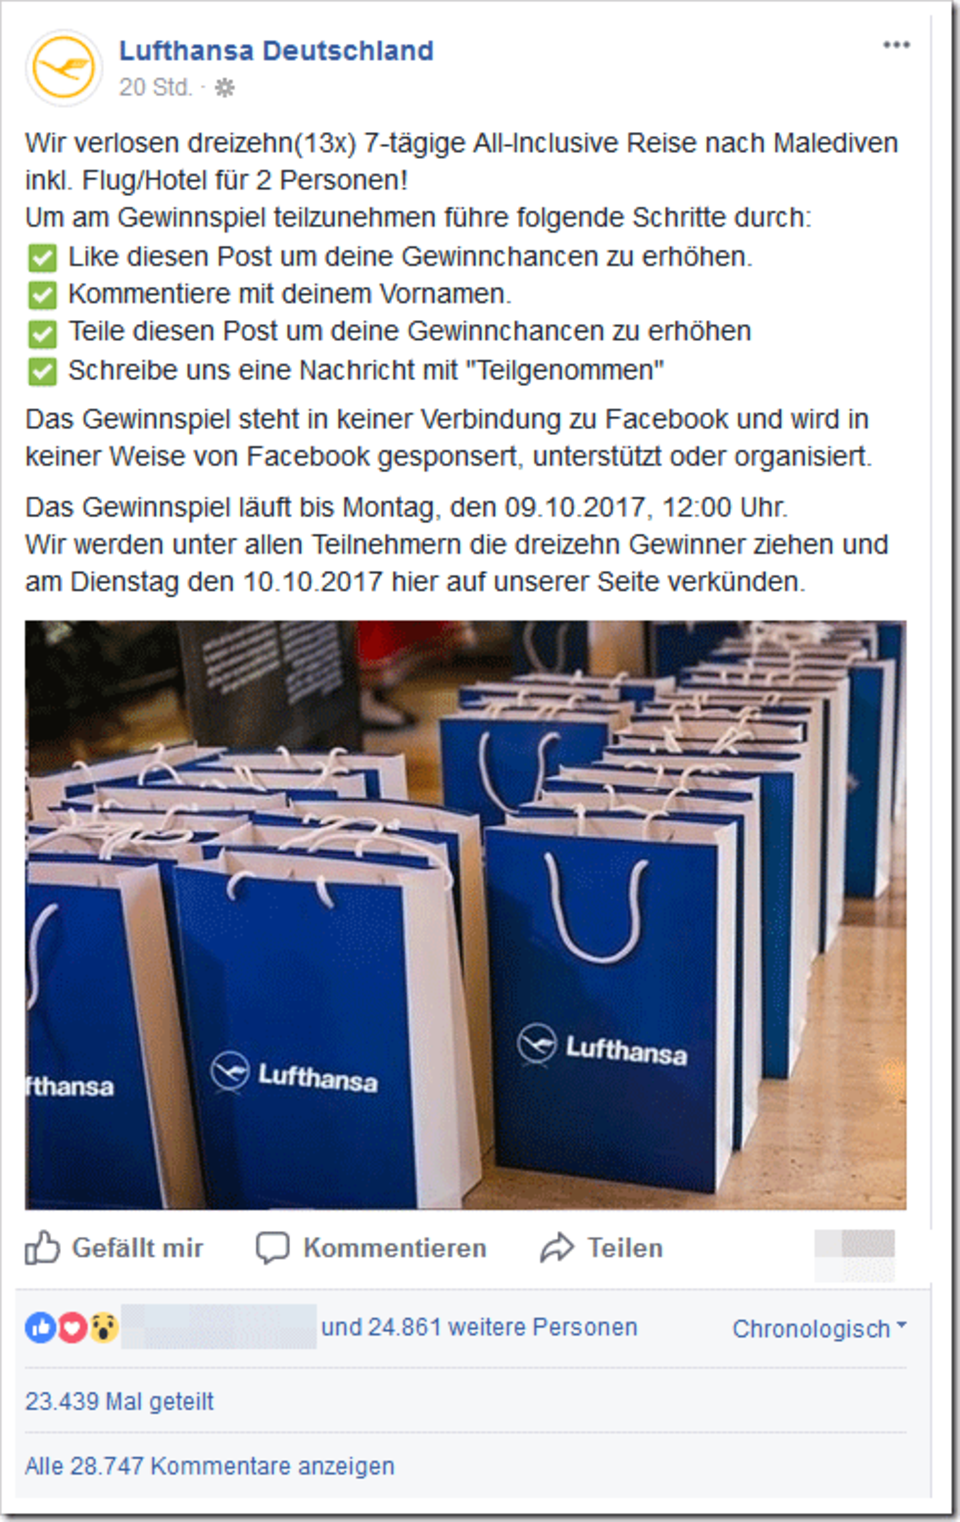 Vorsicht, Falle: Die Lufthansa verlost auf Facebook KEINE Malediven-Reise!